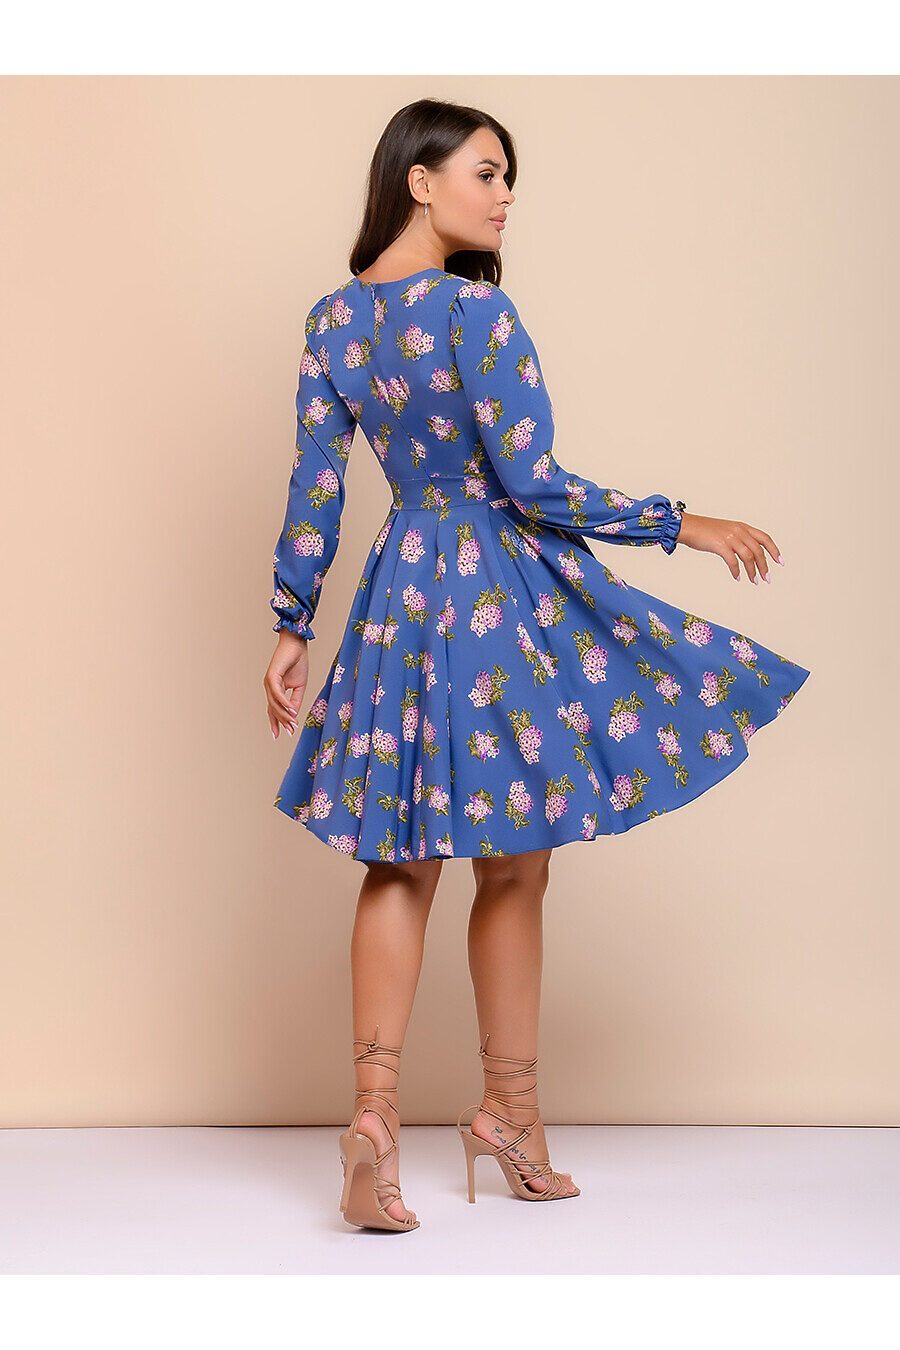 Платье для женщин 1001 DRESS 685823 купить оптом от производителя. Совместная покупка женской одежды в OptMoyo